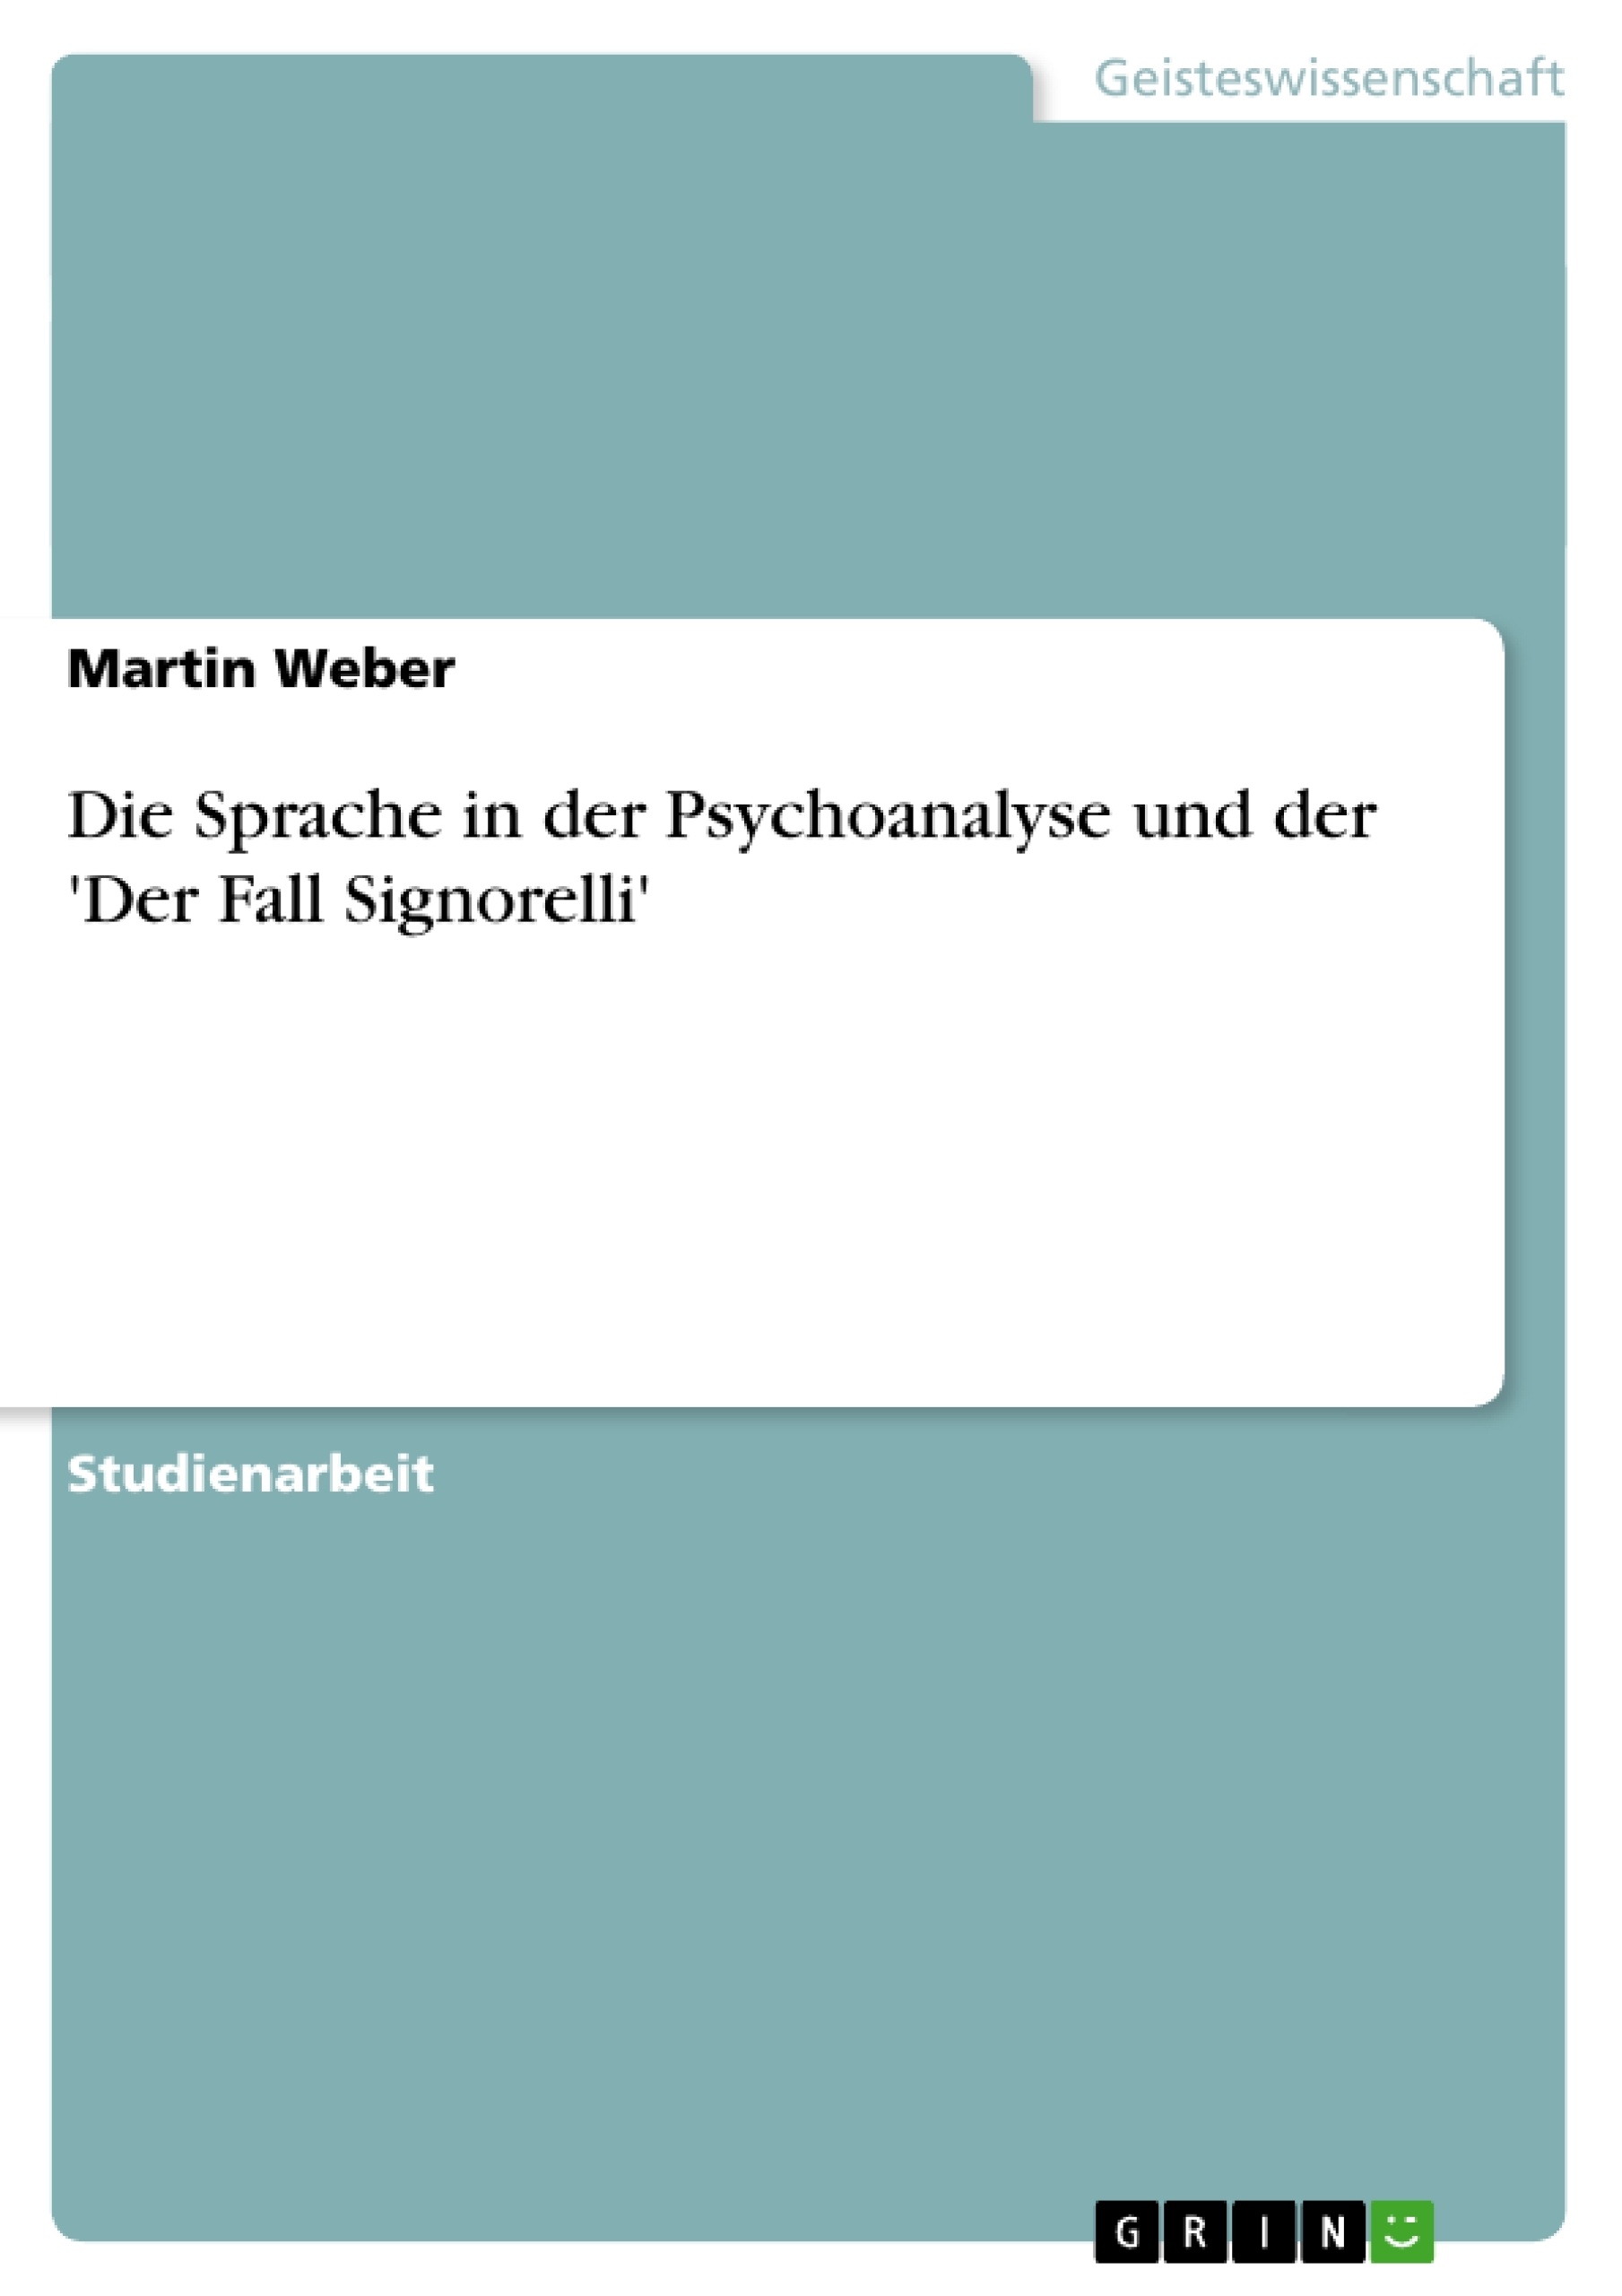 Título: Die Sprache in der Psychoanalyse und der 'Der Fall Signorelli'